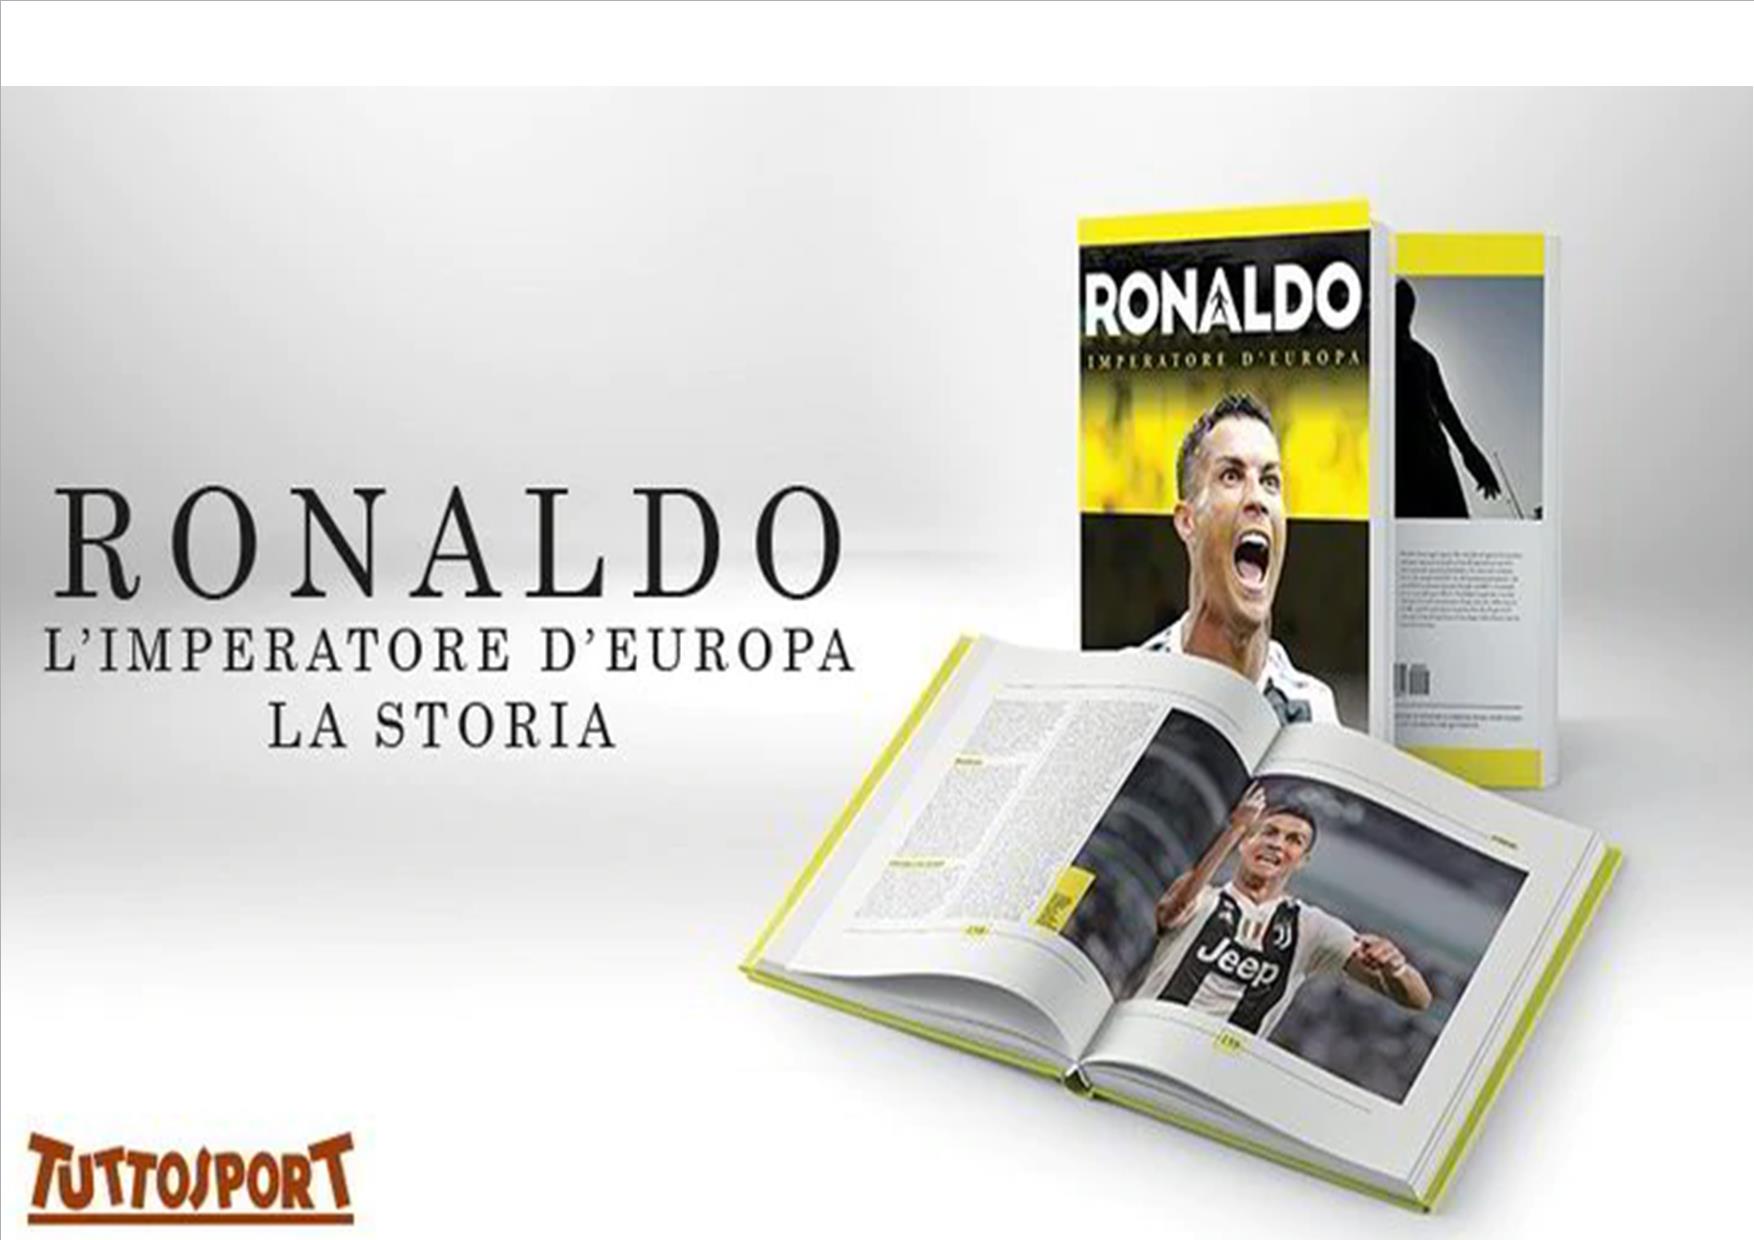 «Ronaldo empereur d’Europe»: Le livre qui retrace l’histoire de Cr7 enfin sorti